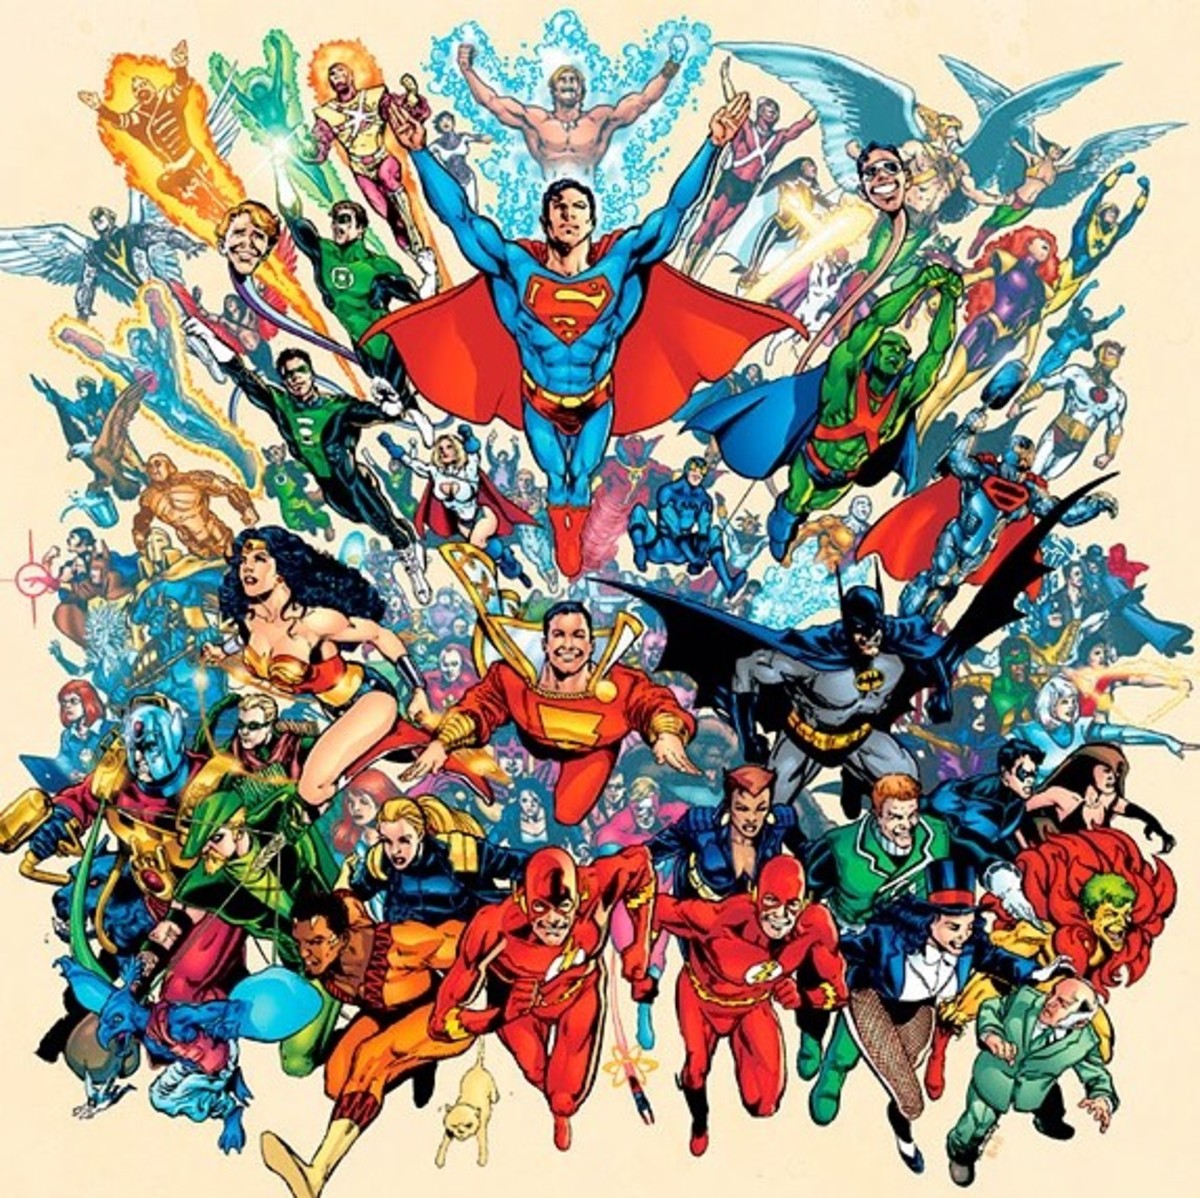 Cockham superheroes. Герои Марвел (Вселенная Марвел). DC Universe комиксы. Вселенная ДИСИ герои. Вселенная Марвел и ДС.